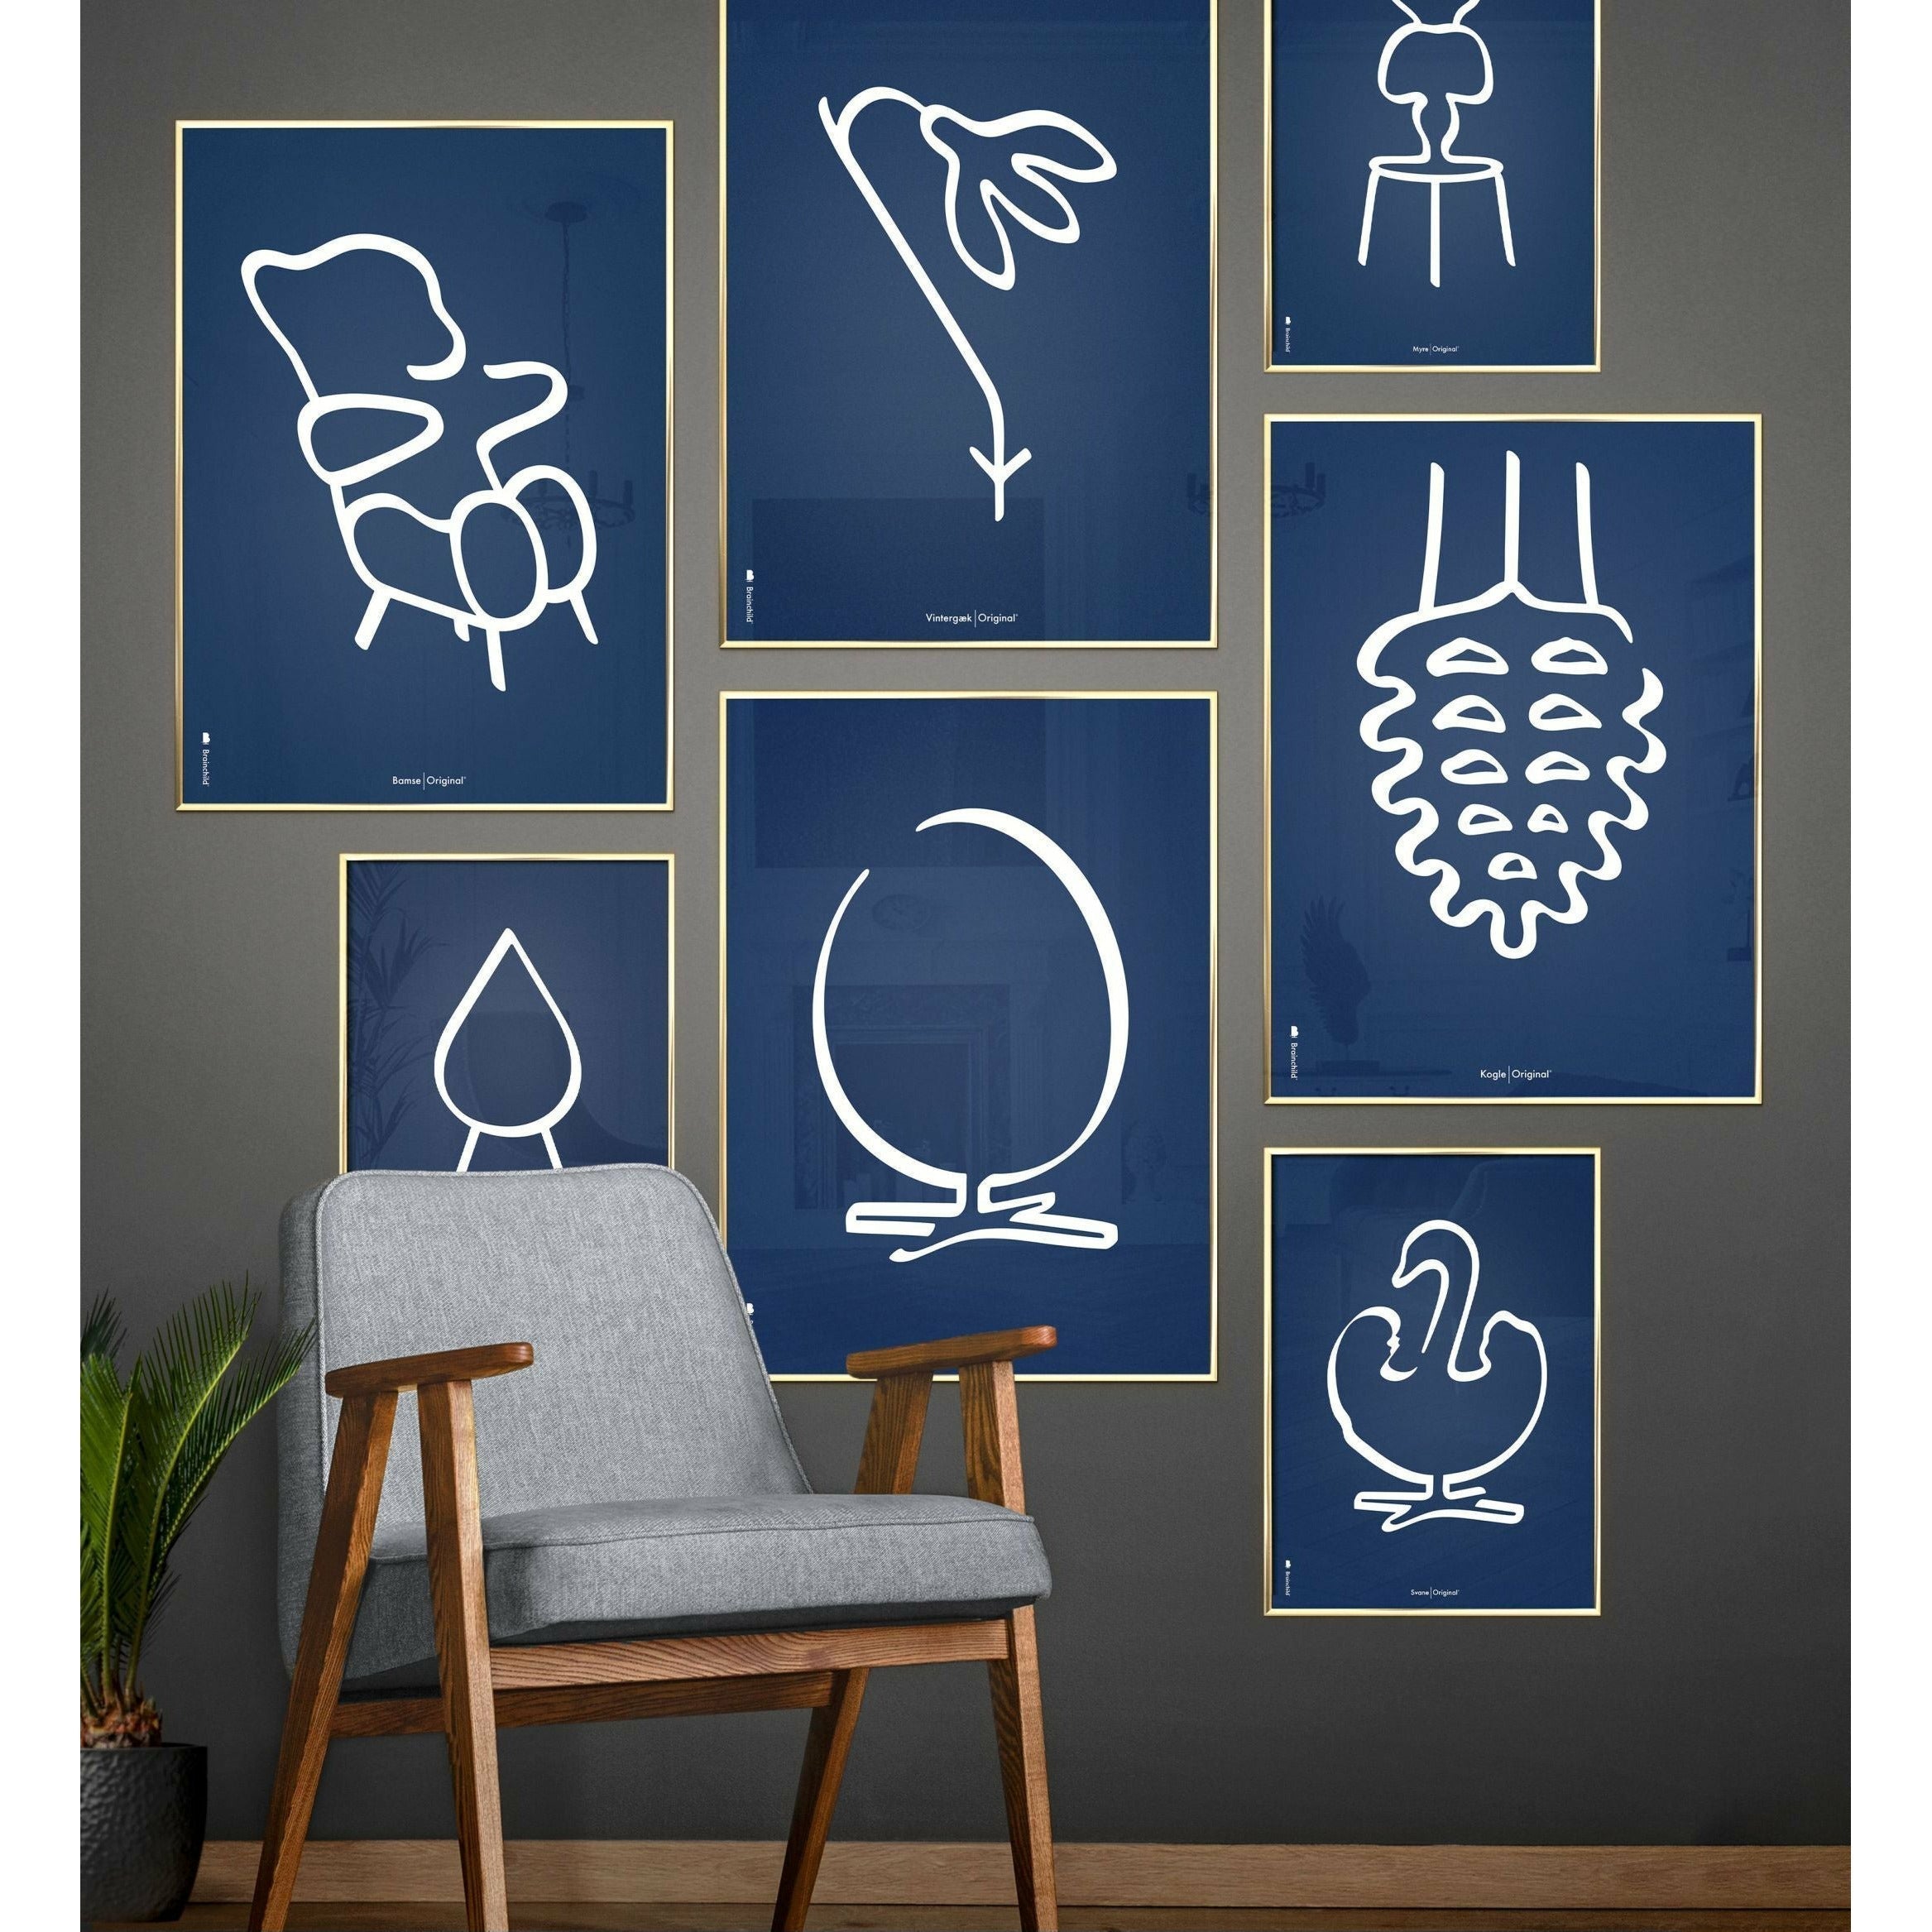 Pomysny plakat linii misy misy, rama wykonana z ciemnego drewna A5, niebieskie tło